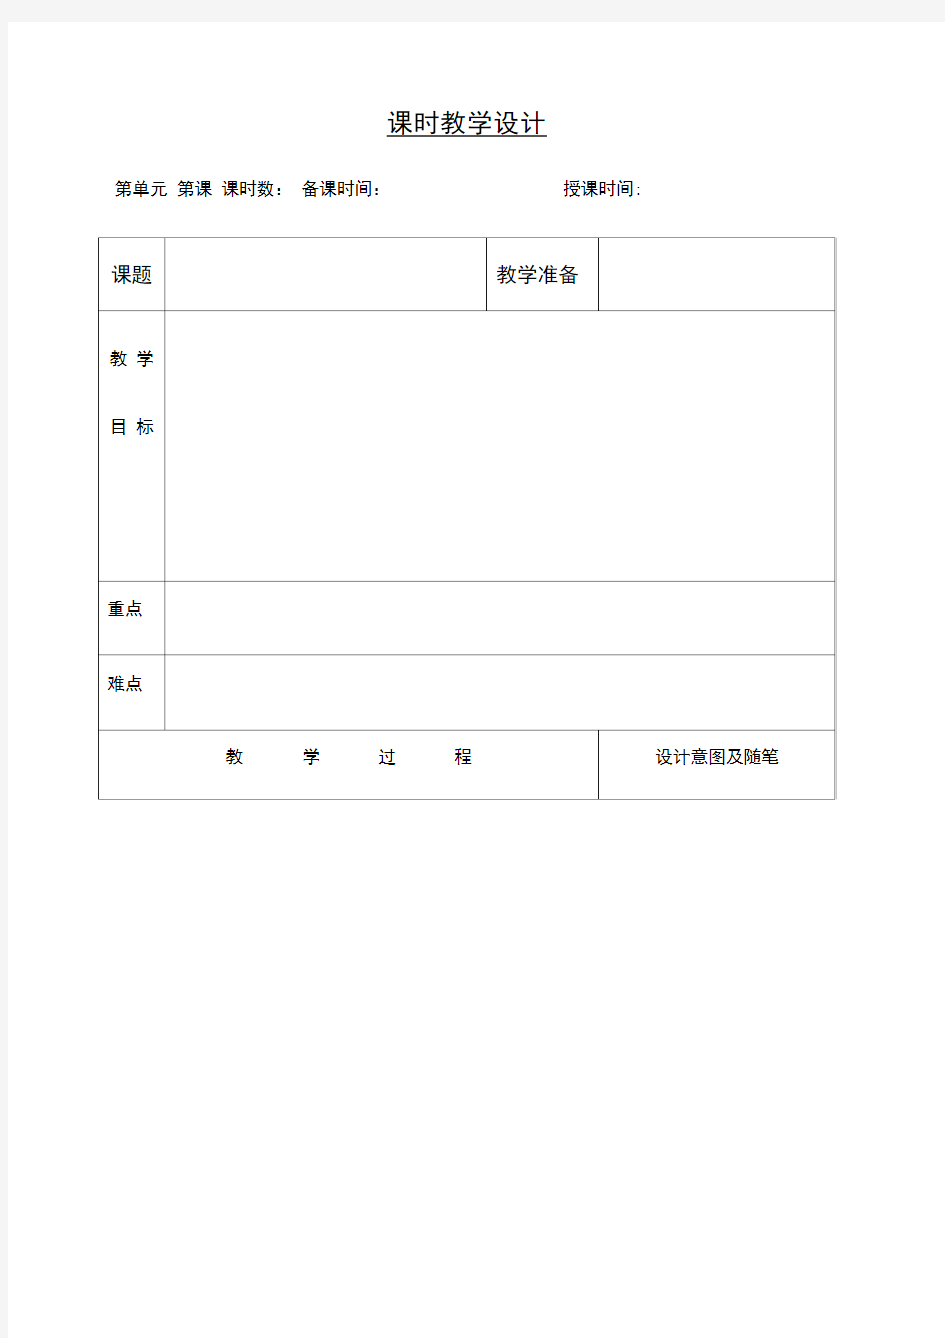 小学语文教案课程模板(表格)